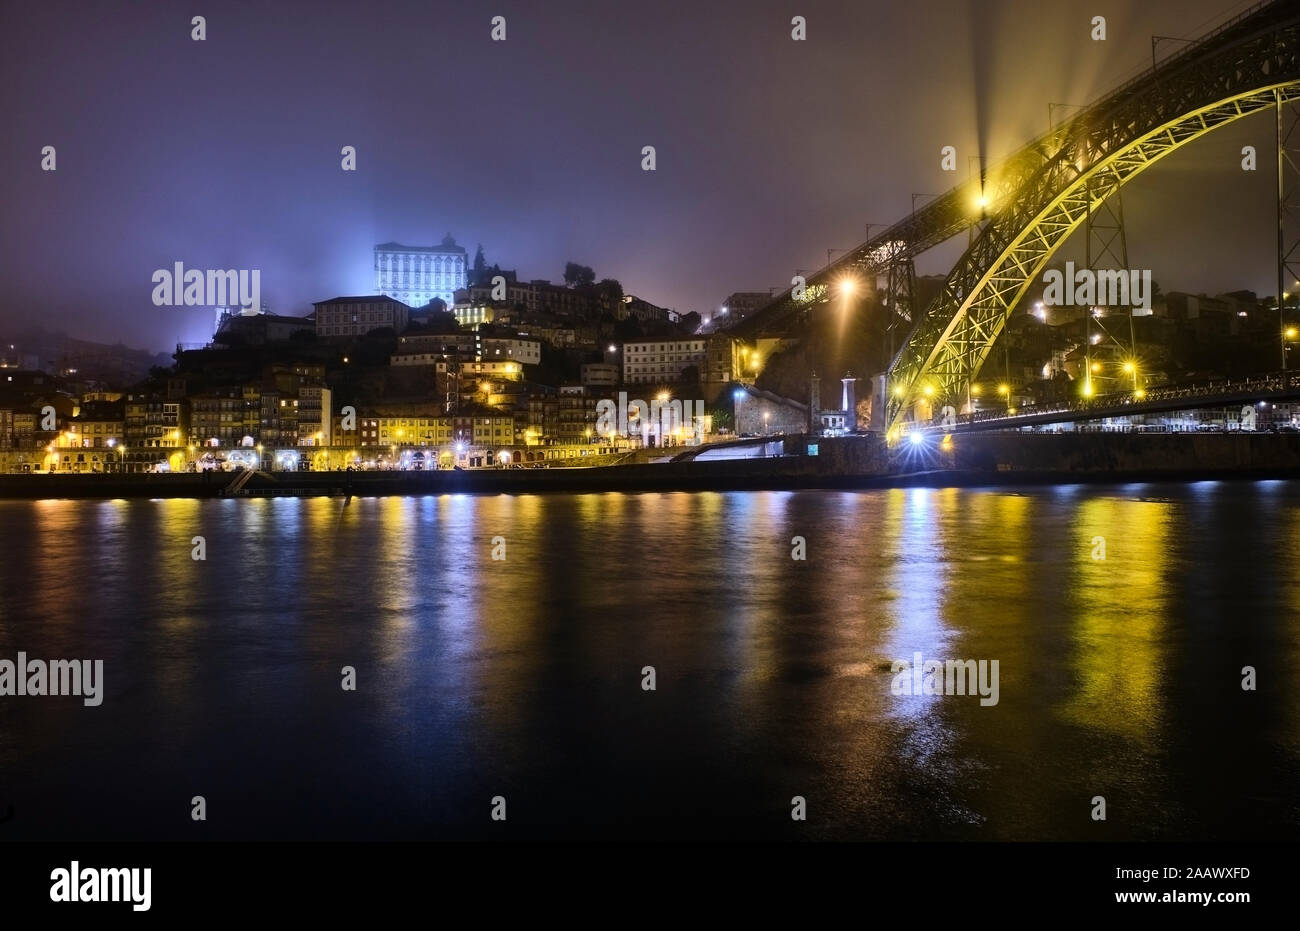 Portugal, Porto, Douro, ciudad iluminada y el puente Dom Luis visto sobre el agua Foto de stock